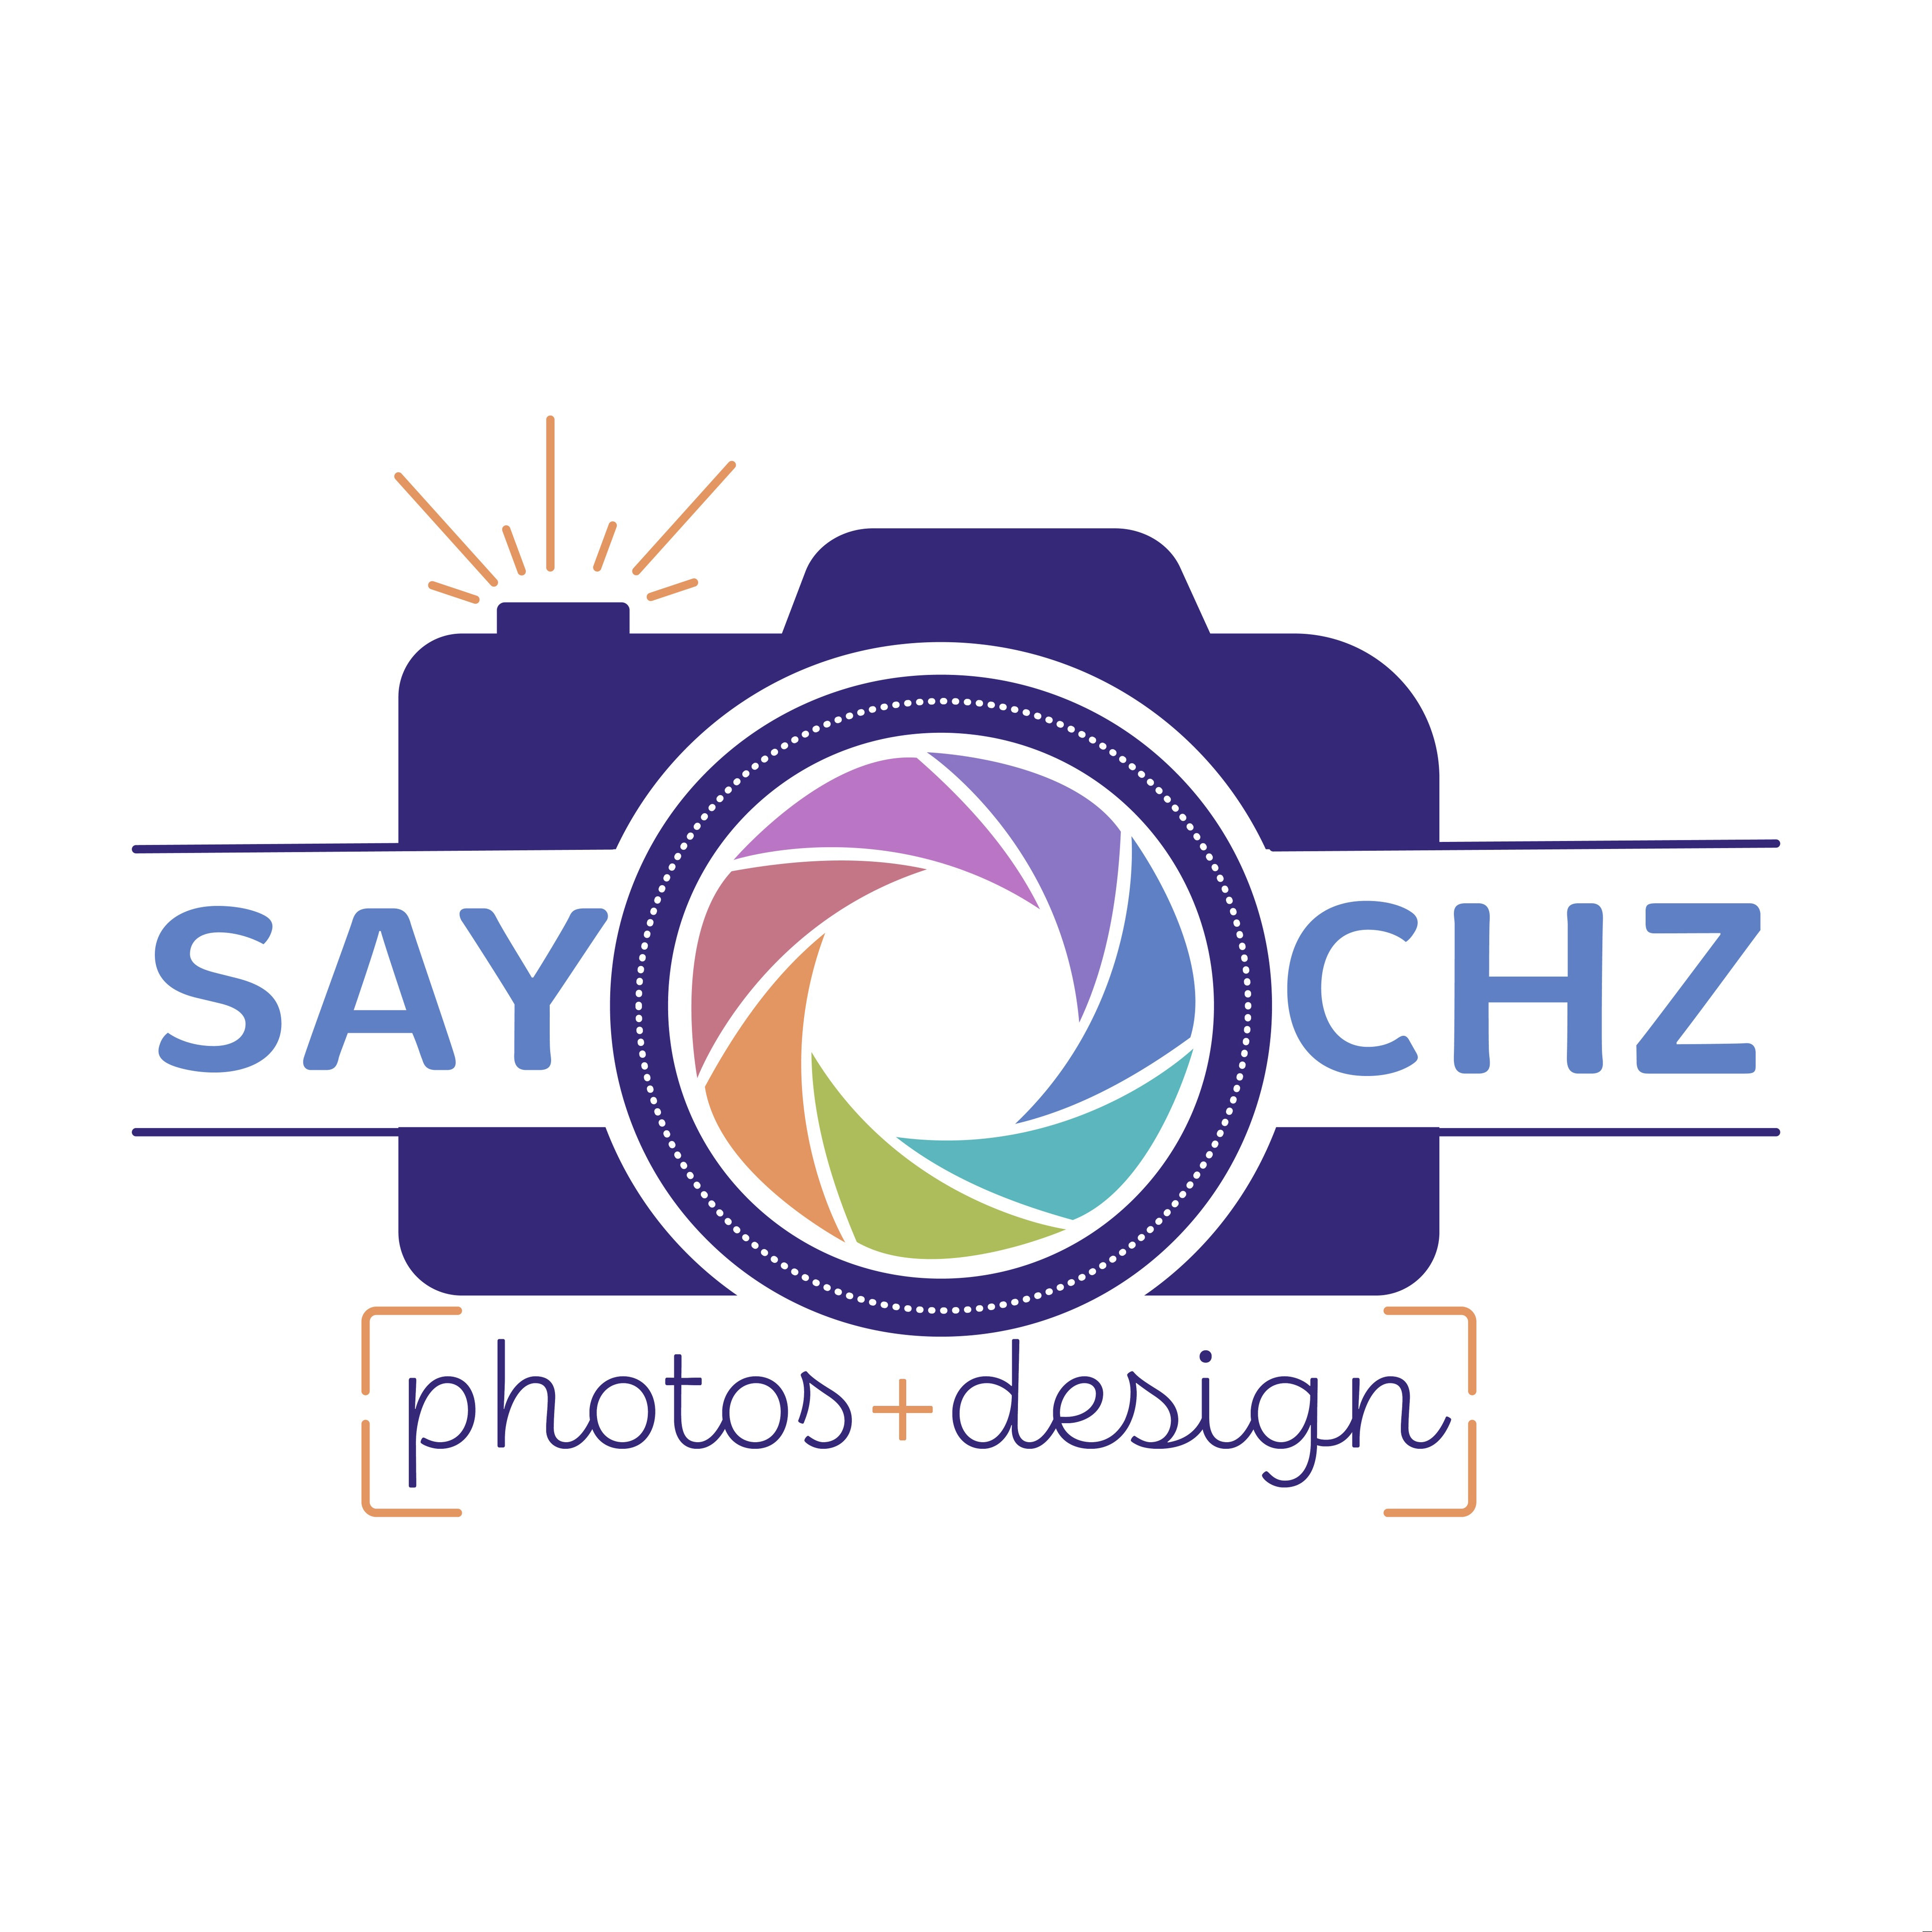 SAY CHZ photos + design